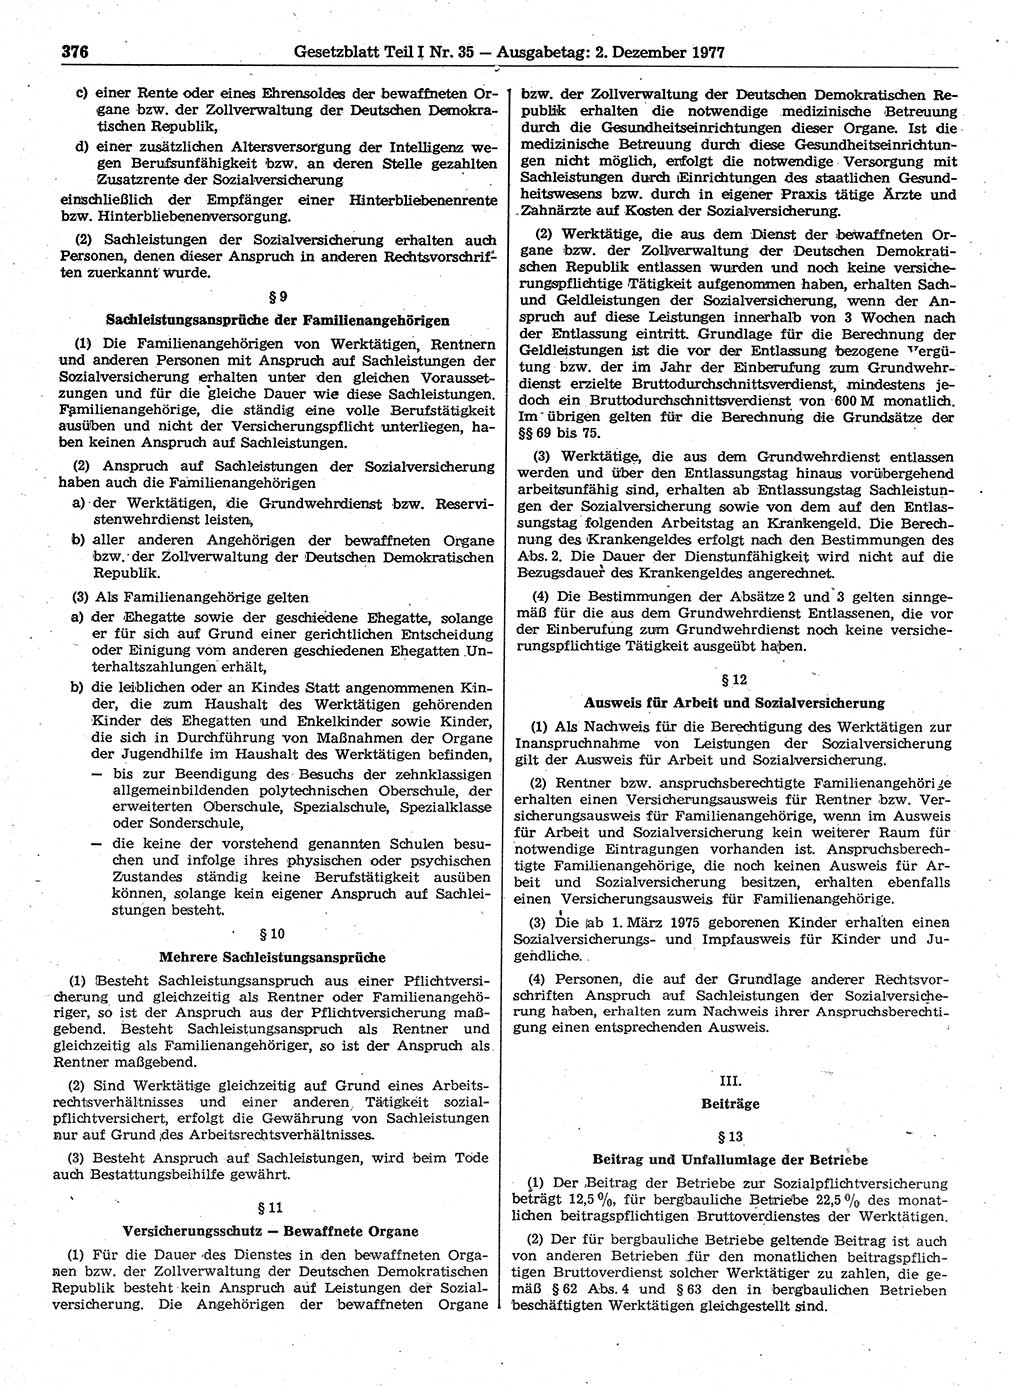 Gesetzblatt (GBl.) der Deutschen Demokratischen Republik (DDR) Teil Ⅰ 1977, Seite 376 (GBl. DDR Ⅰ 1977, S. 376)